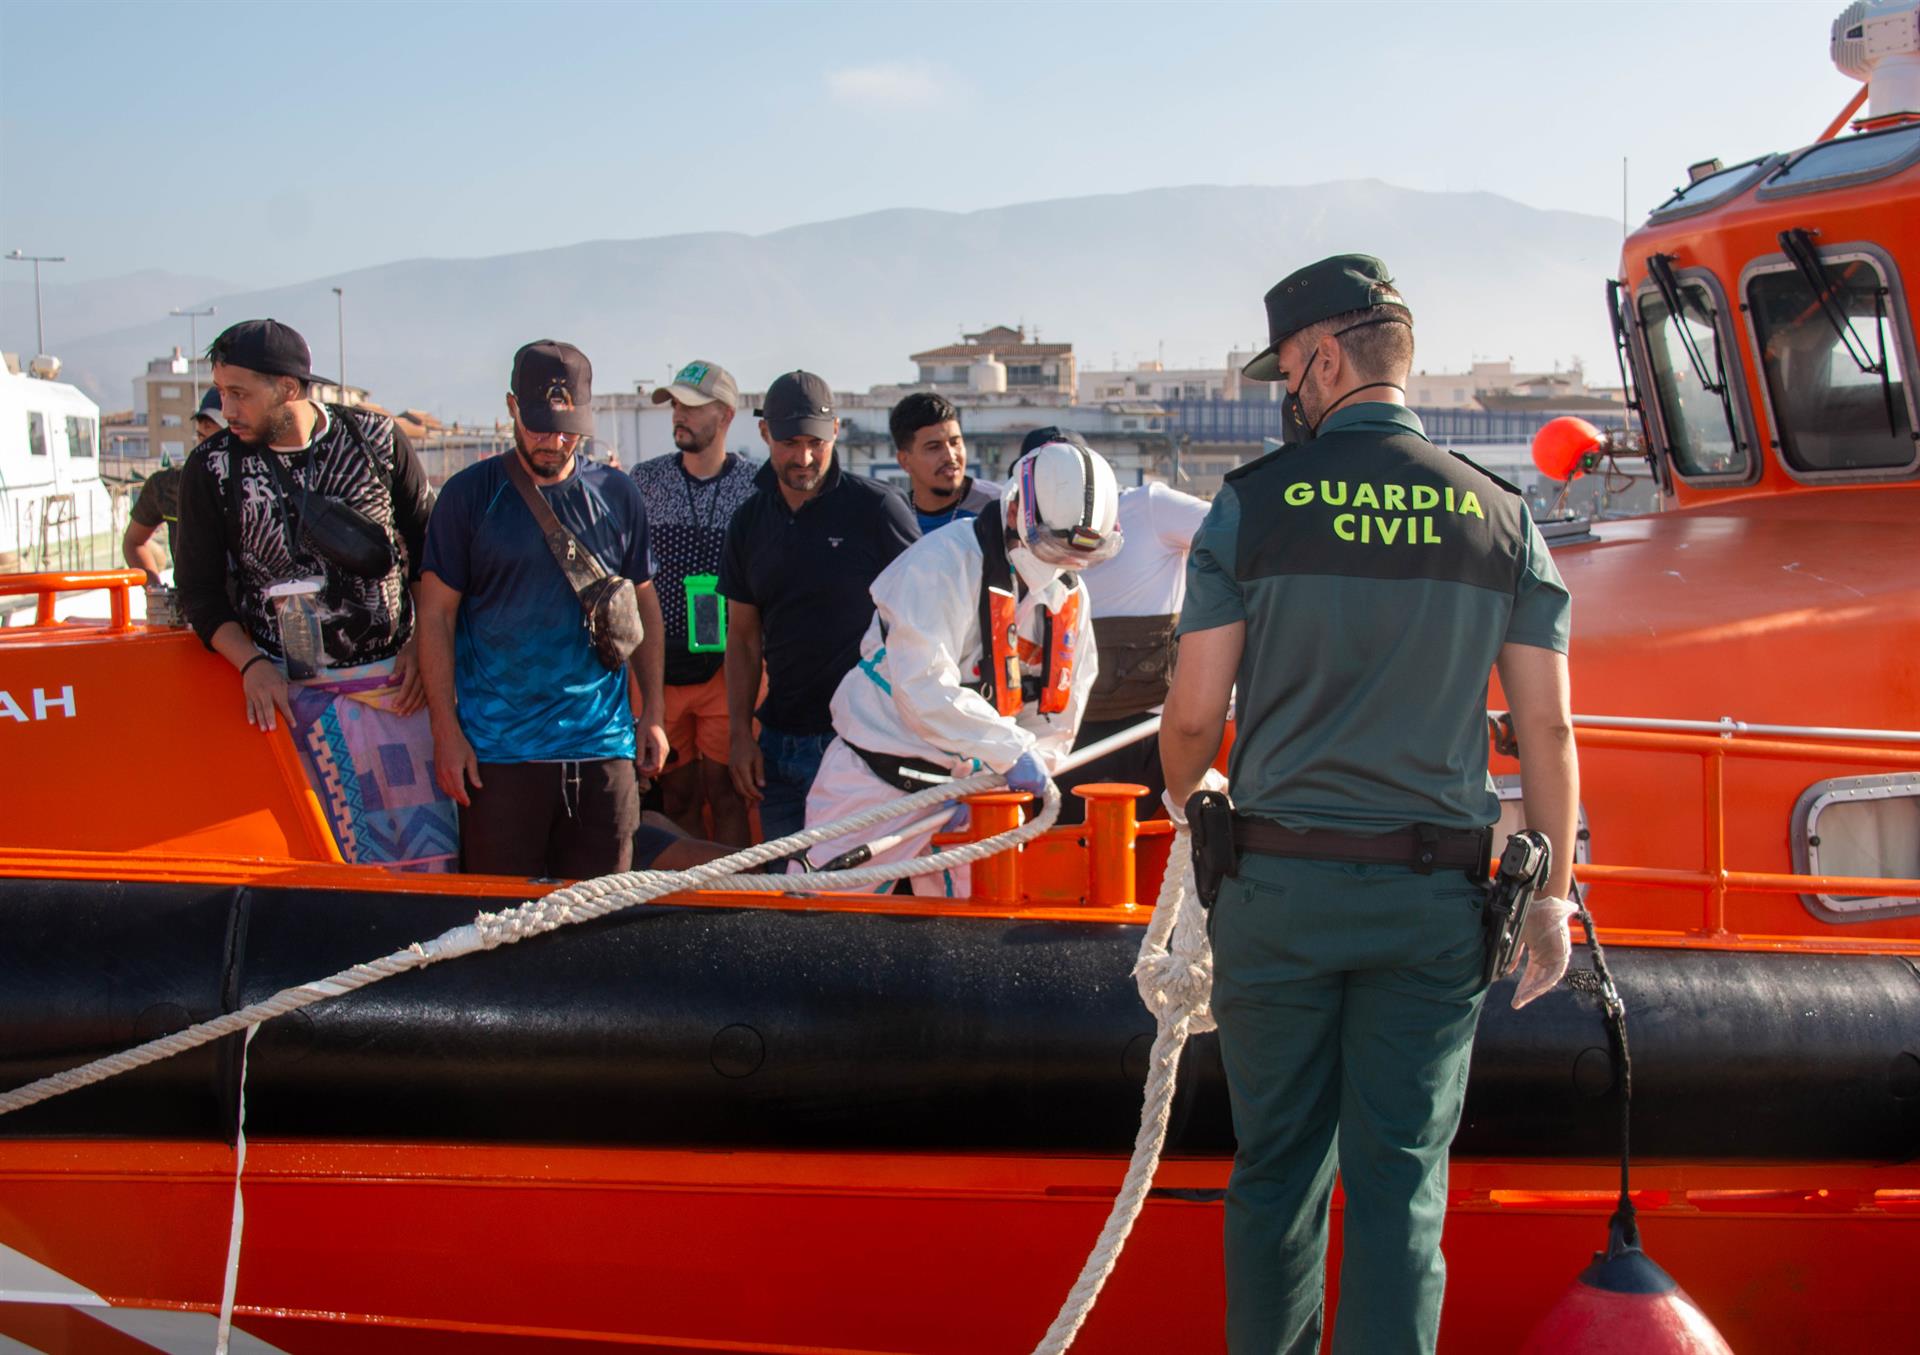 Llegada al puerto de Motril de los inmigrantes rescatados. EFE/Alba Feixas